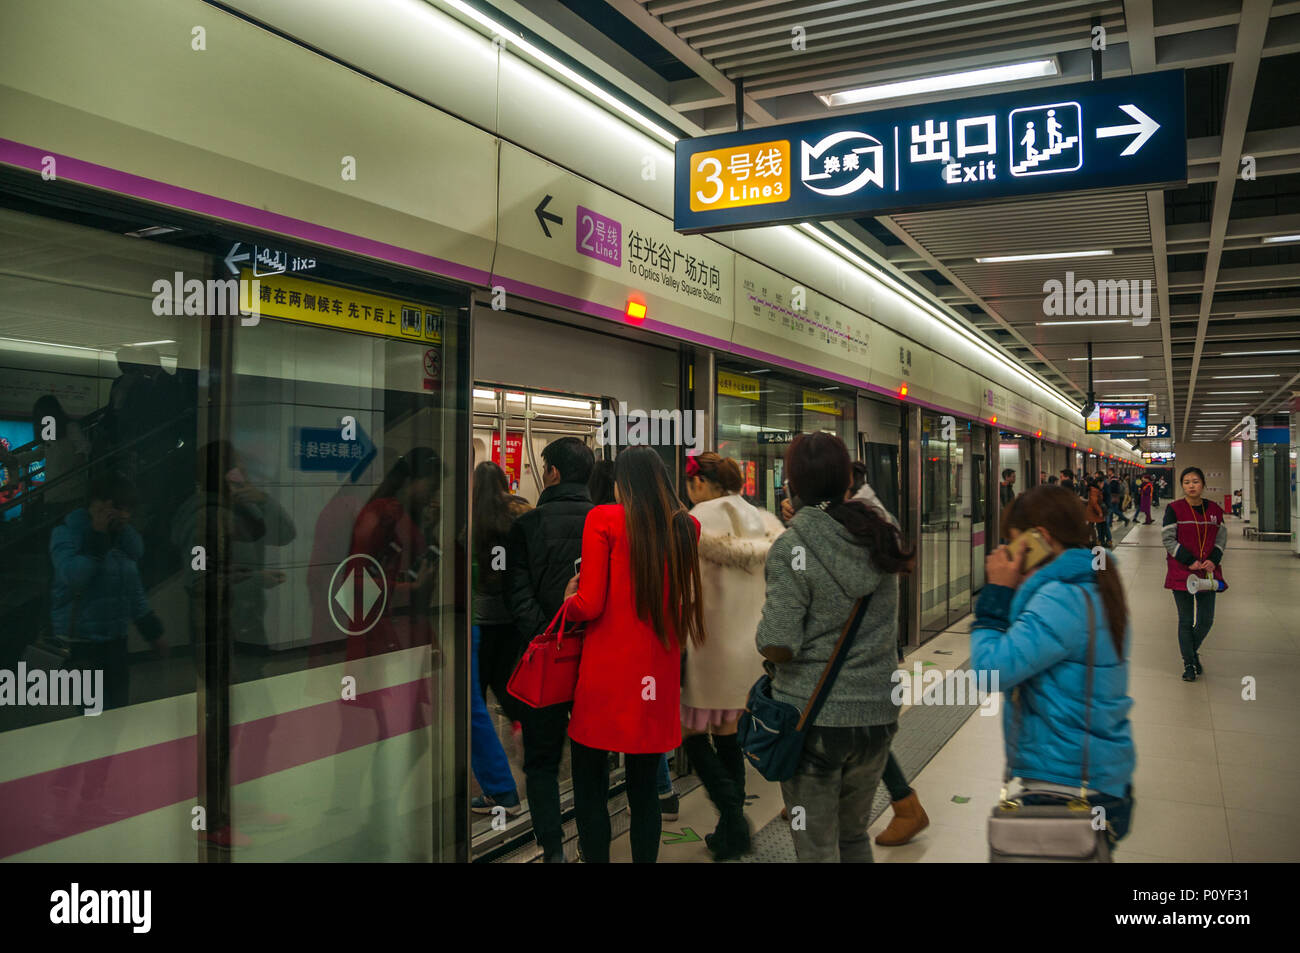 Fluggästen eine Linie 2 u-Bahn Zug an der Fanhu Station in Wuhan, China. Stockfoto